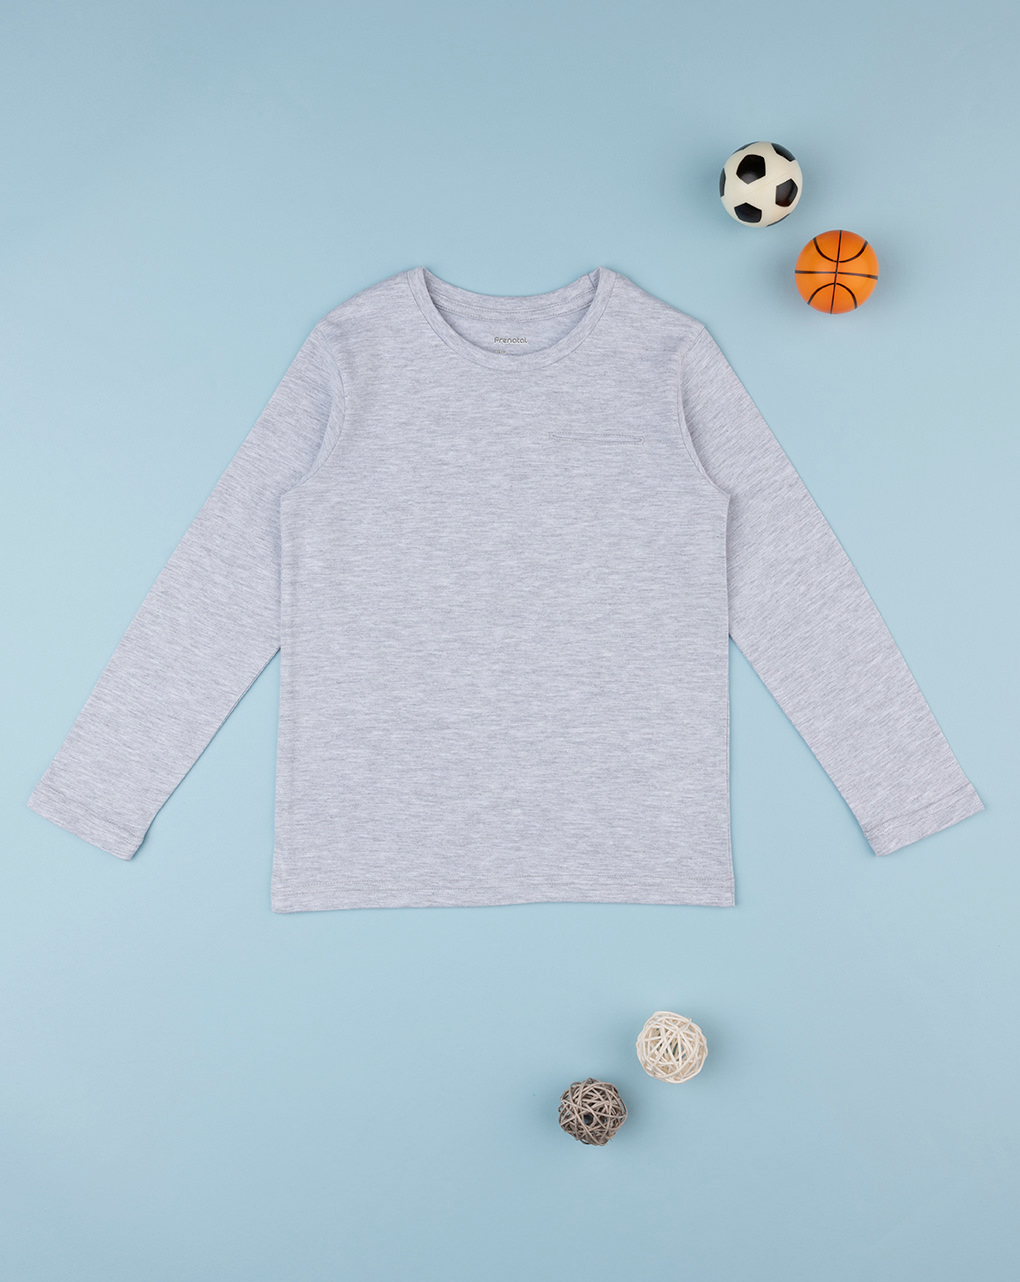 παιδική μπλούζα γκρι με τσέπη για αγόρι - Prénatal